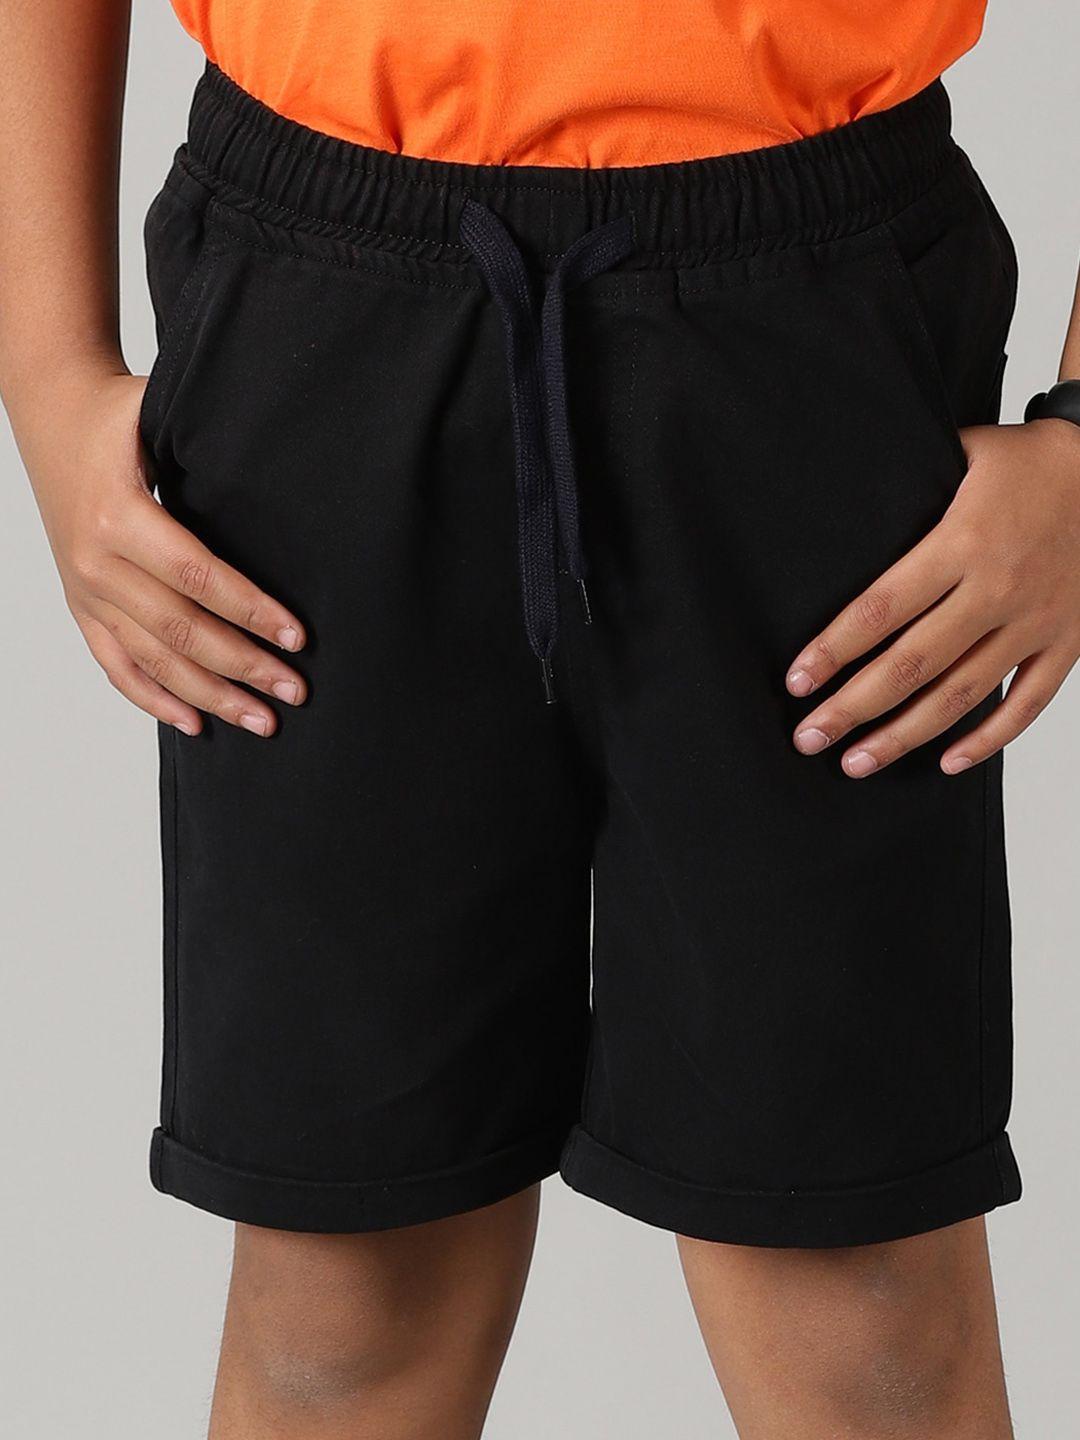 kiddopanti boys mid-rise regular shorts